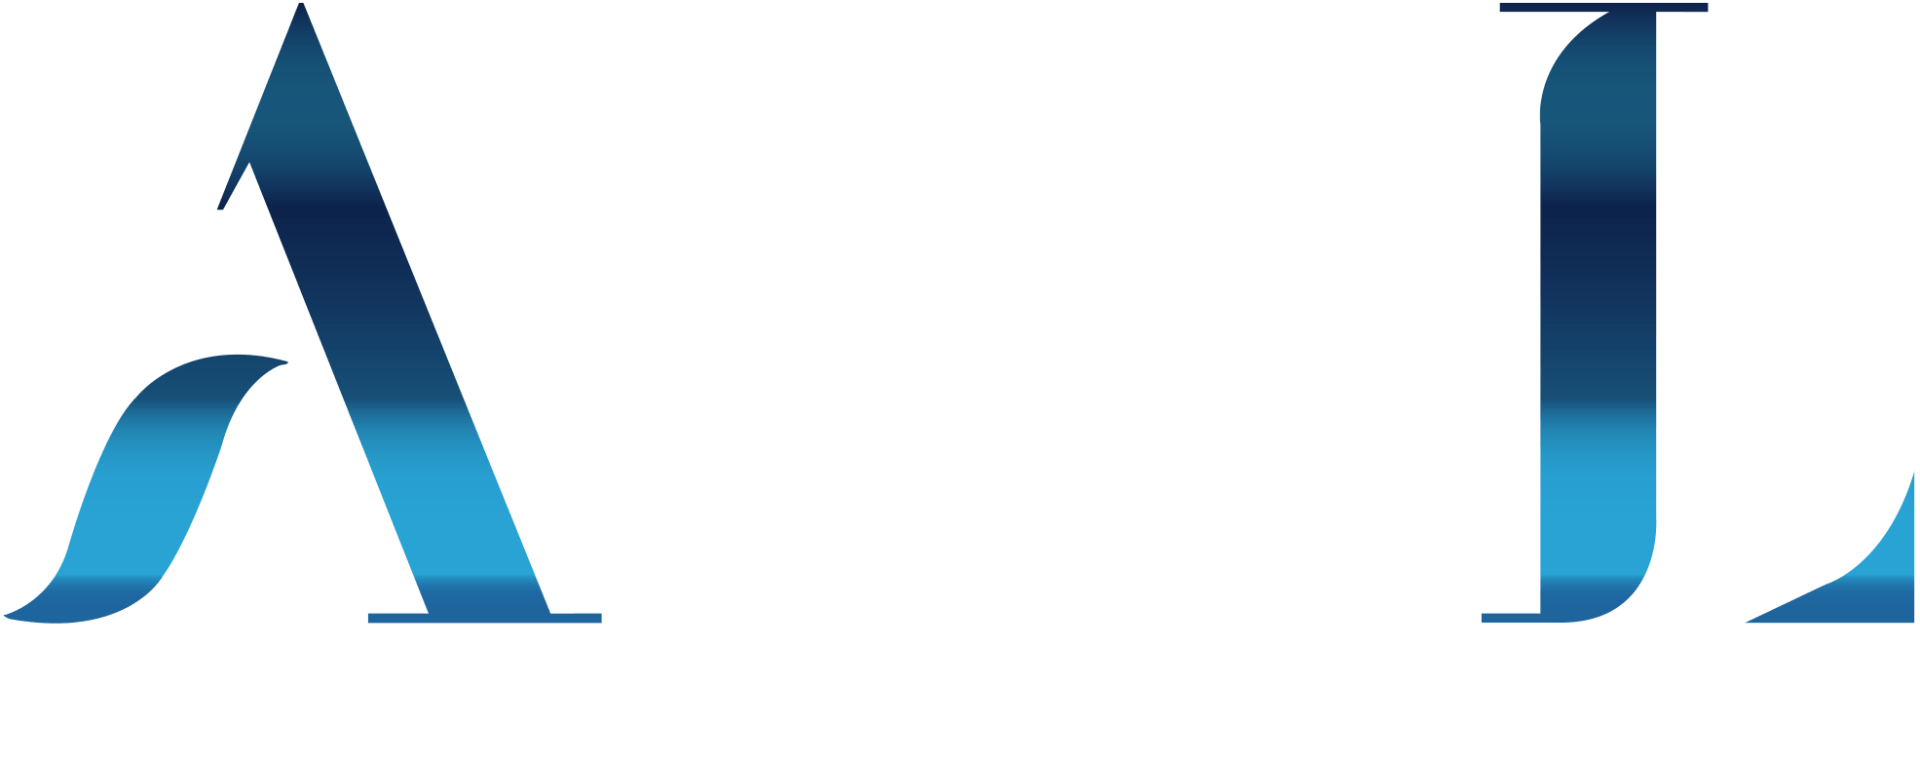 Azul Marketing NY | Marketing Solutions for Small Businesses | Long Island, NY